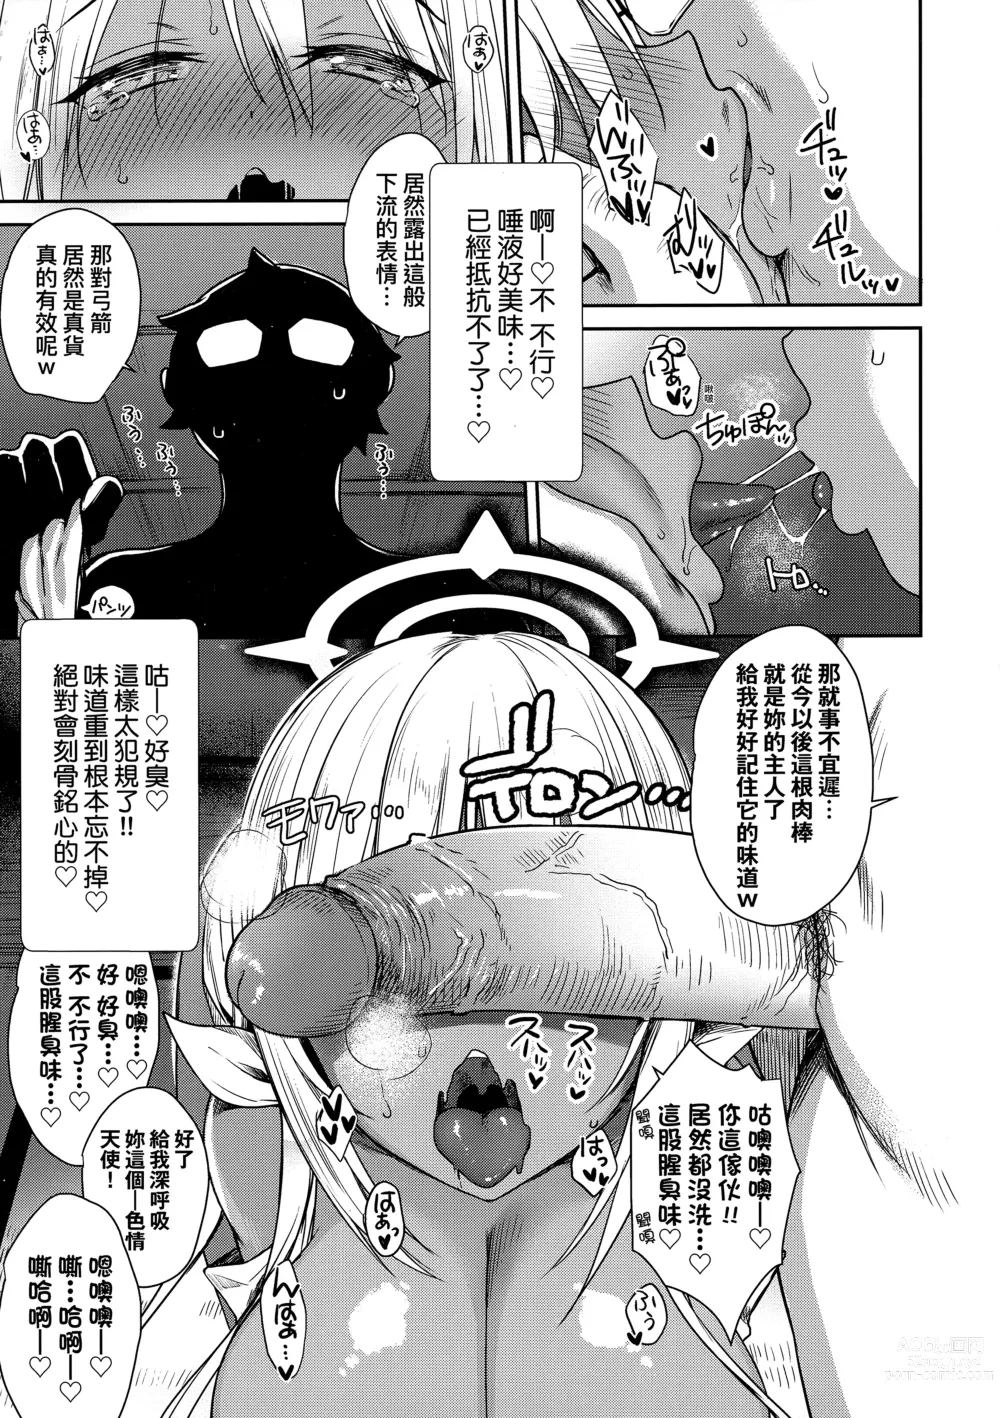 Page 186 of manga 鄰居家的傲嬌淫魔美眉 (decensored)